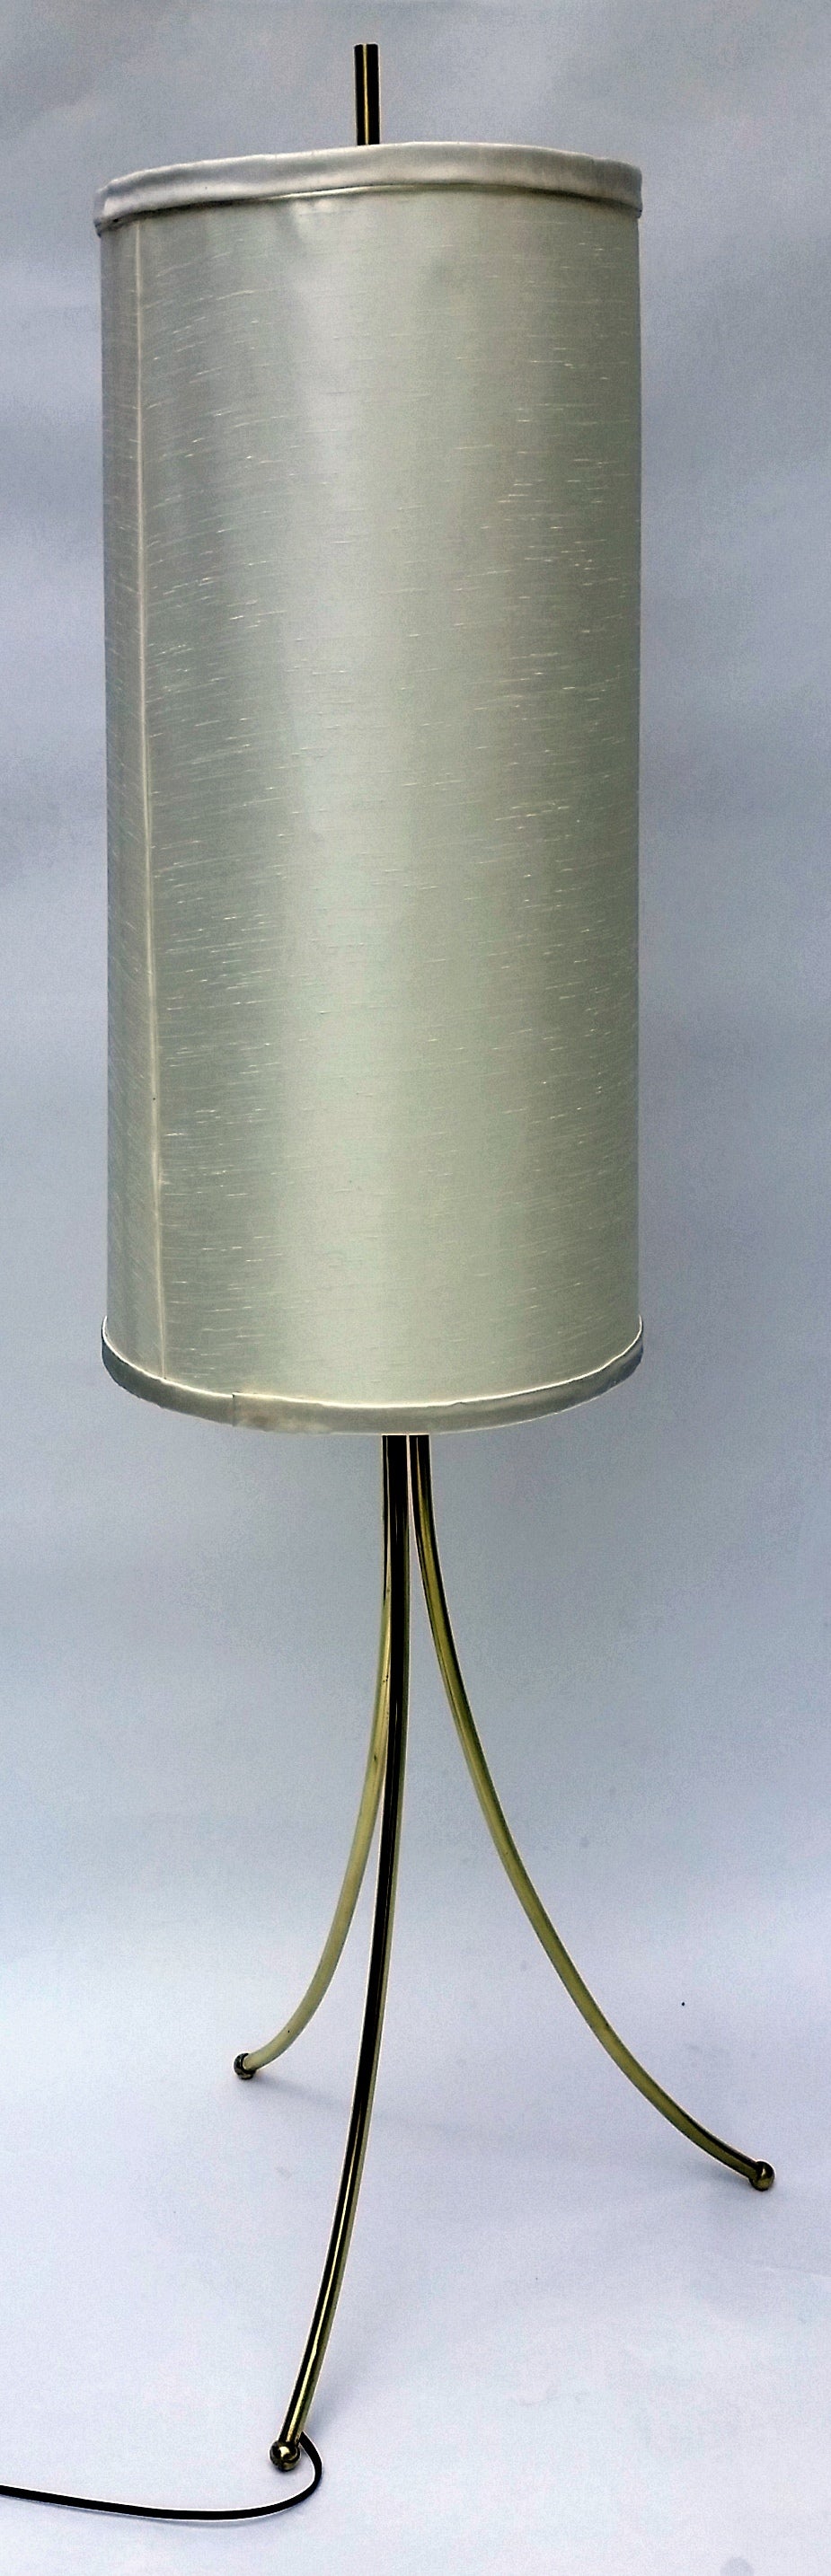 Mid-Century Modern Brass Tripod Floor Lamp in the Style of Robsjohn-Gibbings, 1950 For Sale